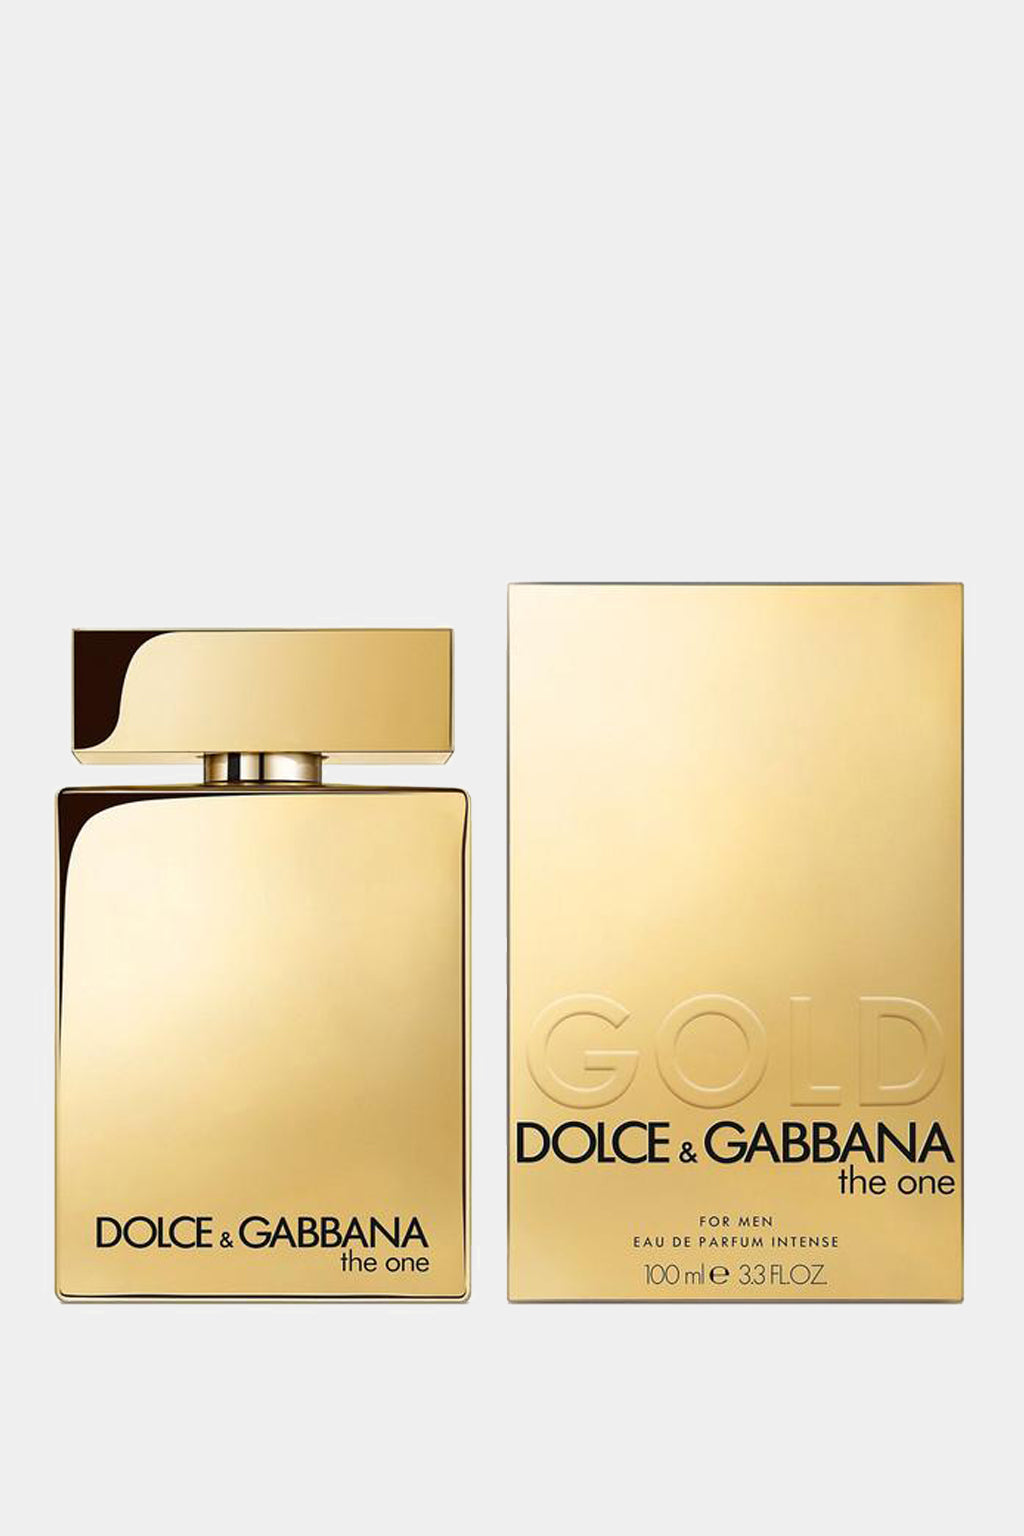 Dolce&Gabbana - The One Gold Intense Eau de Parfum